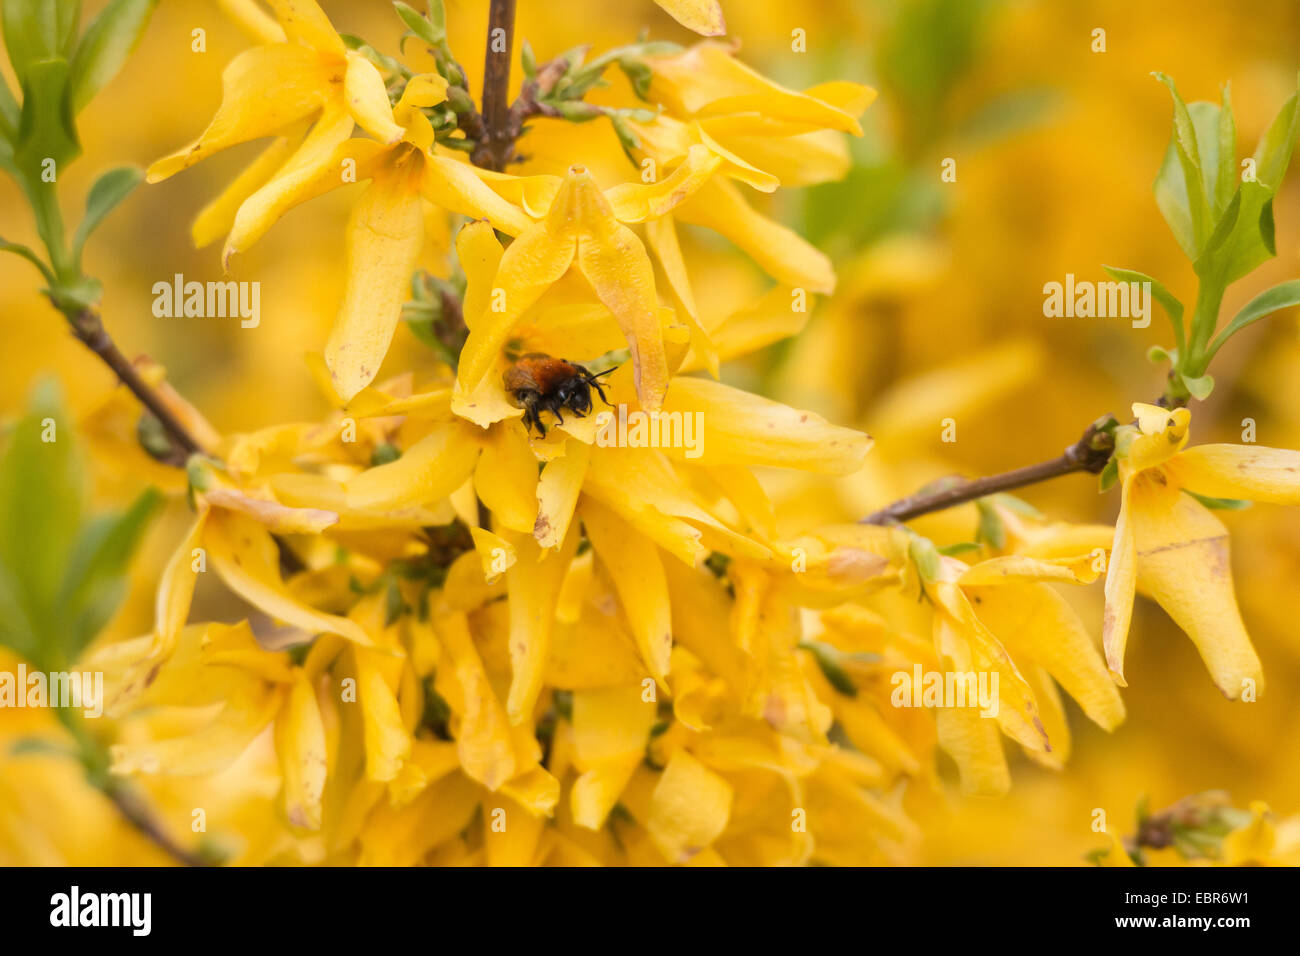 Common forsythia (Forsythia x intermedia, Forsythia intermedia), flowering forsythia with bumble bee, Germany Stock Photo